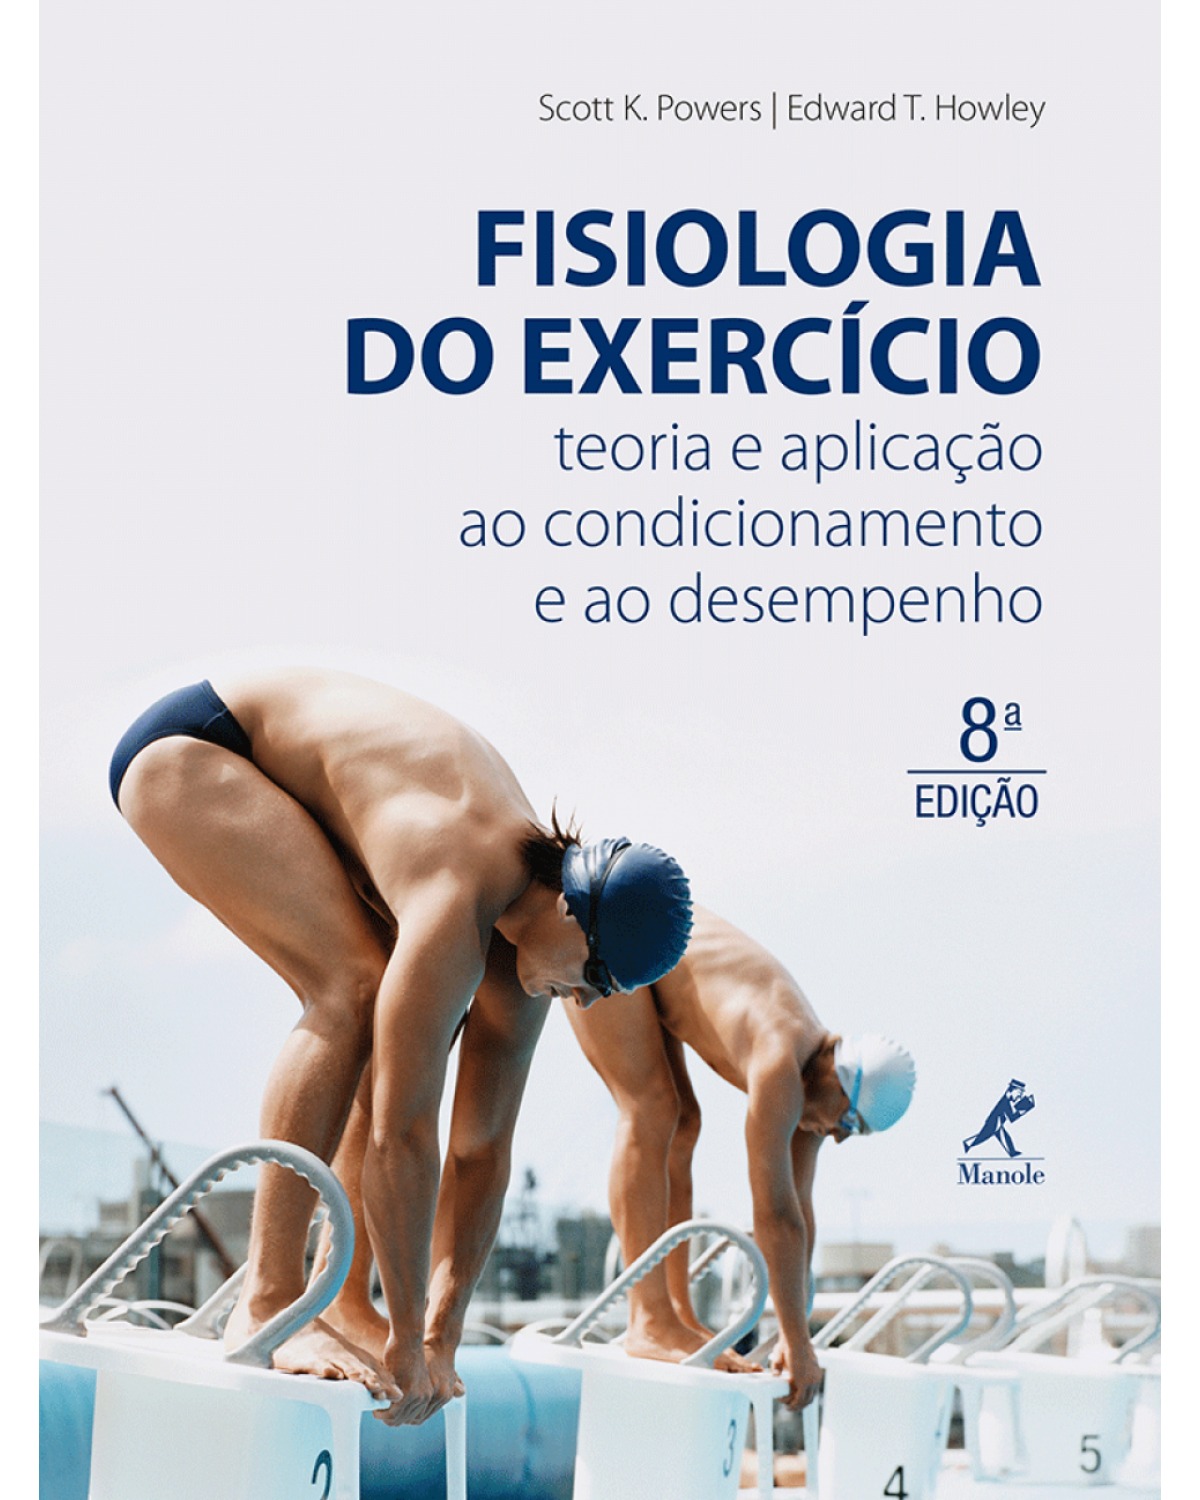 Fisiologia do exercício - Teoria e aplicação ao condicionamento e ao desempenho - 8ª Edição | 2014